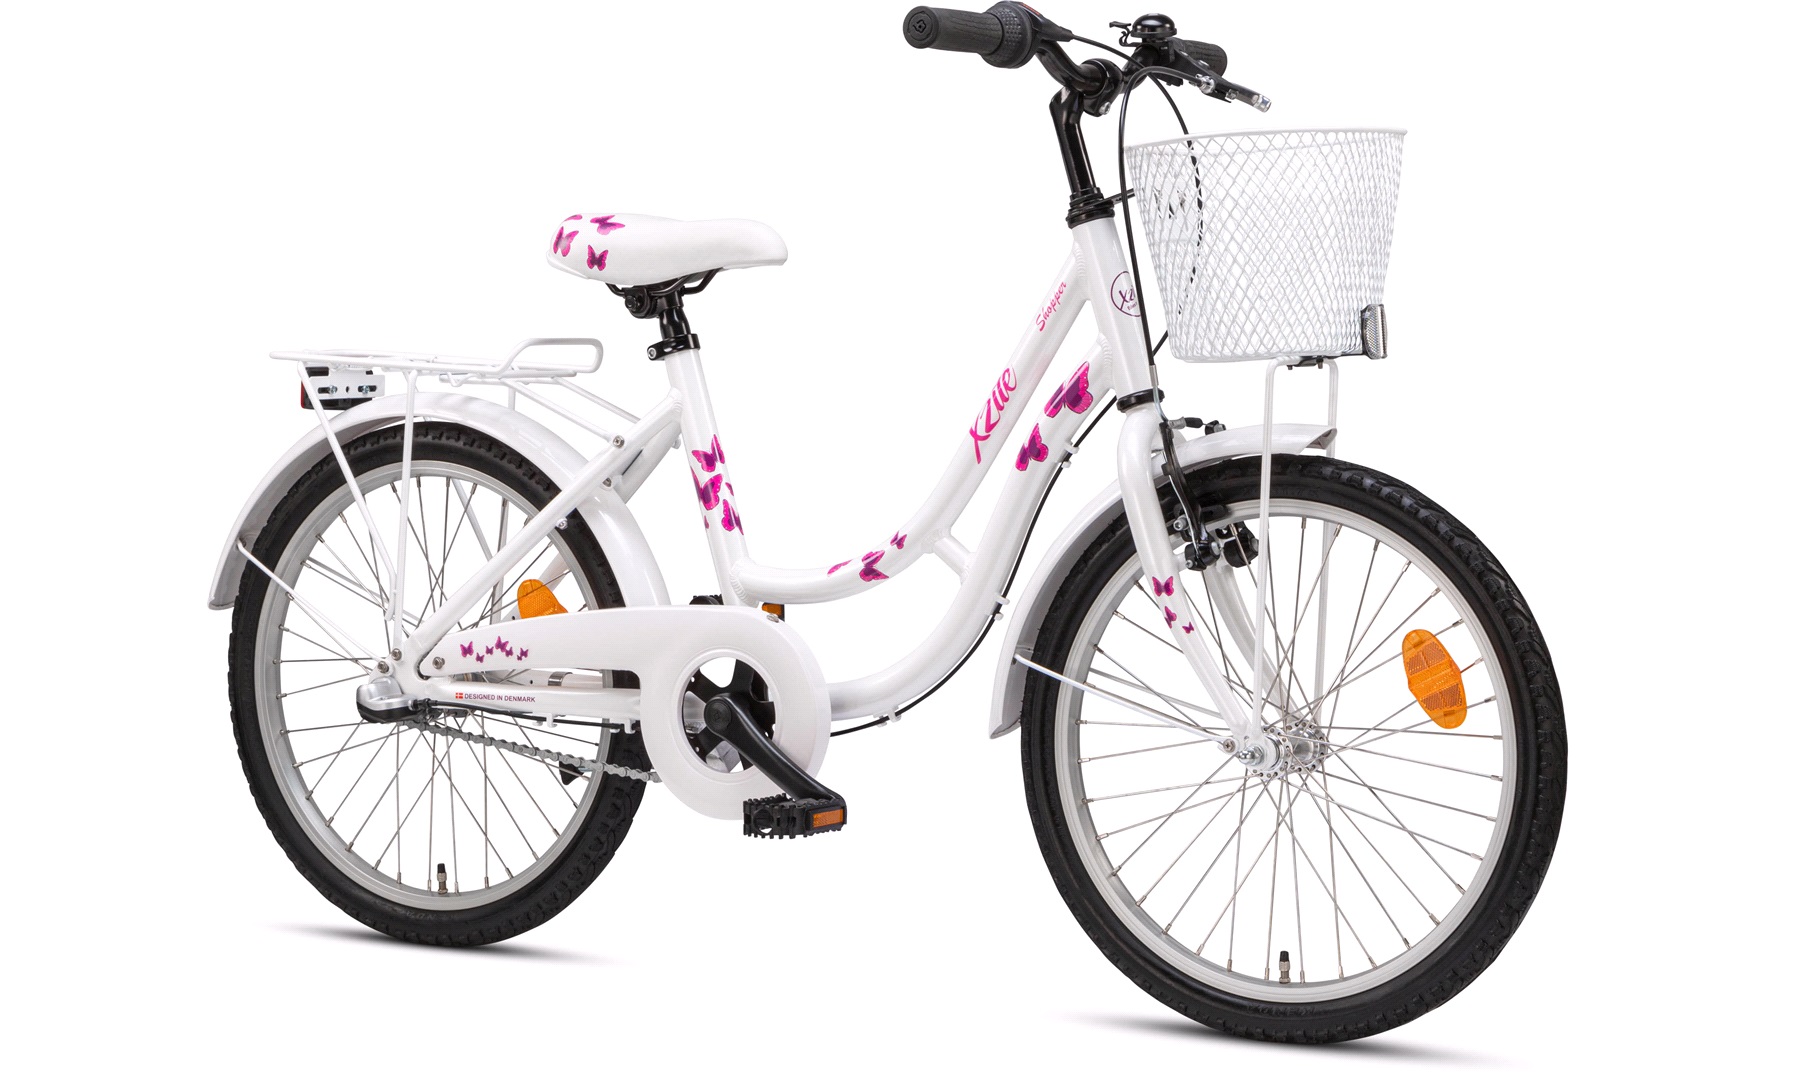 tyngdekraft Kollisionskursus Bryde igennem Pige shopper 20" 3-gear butterfly hvid - Juniorcykler, cykler til børn  mellem 6-14 år - thansen.dk